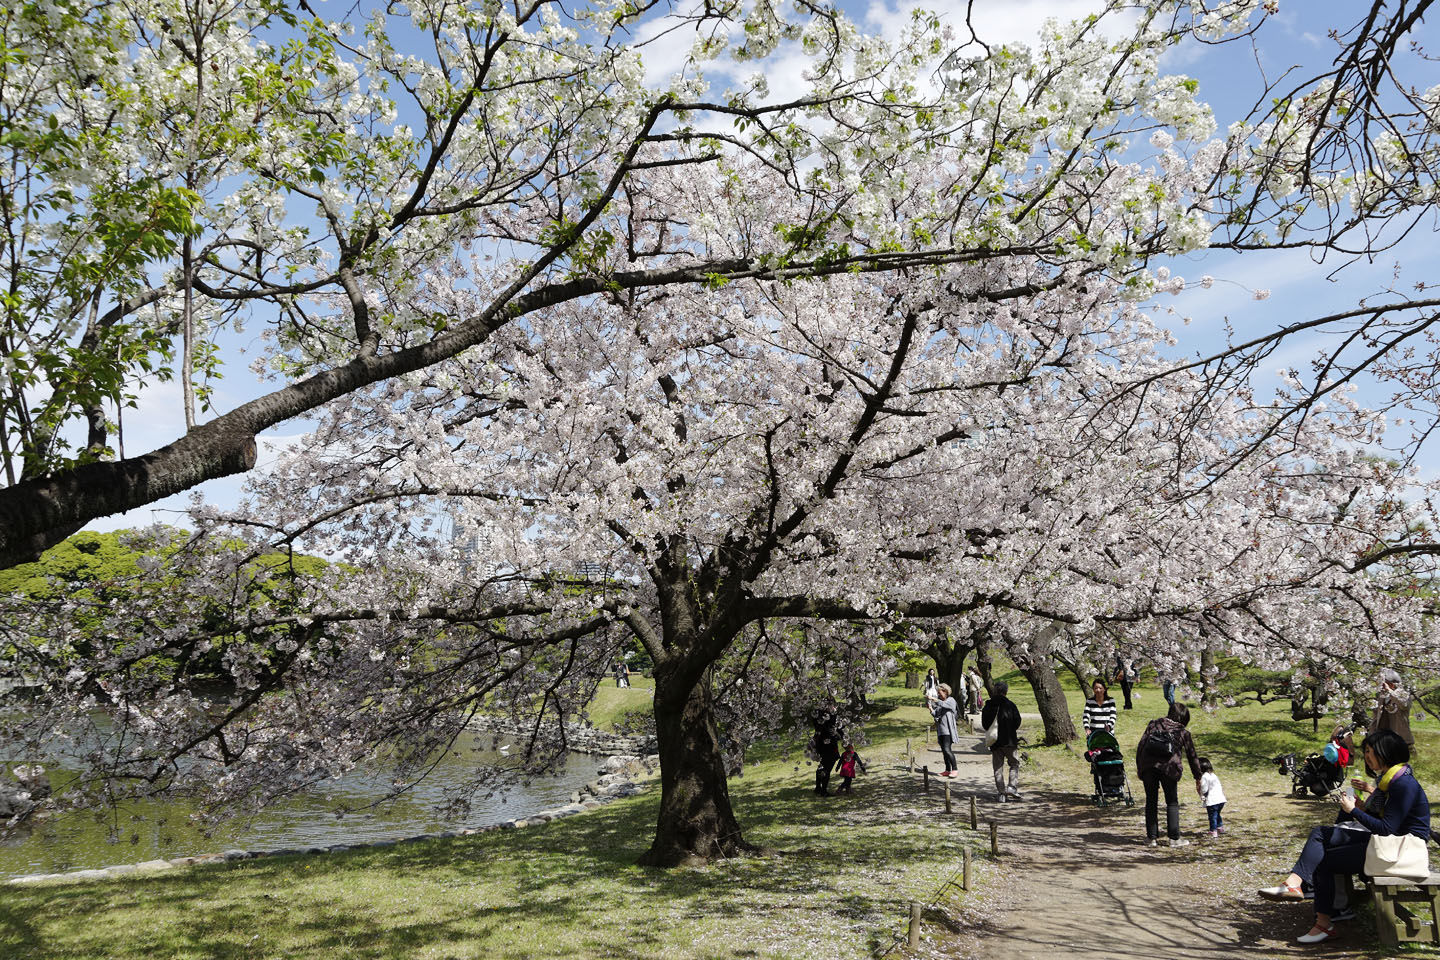 桜満開の浜離宮恩賜庭園 17 季節の花だより はなつうwest Blog